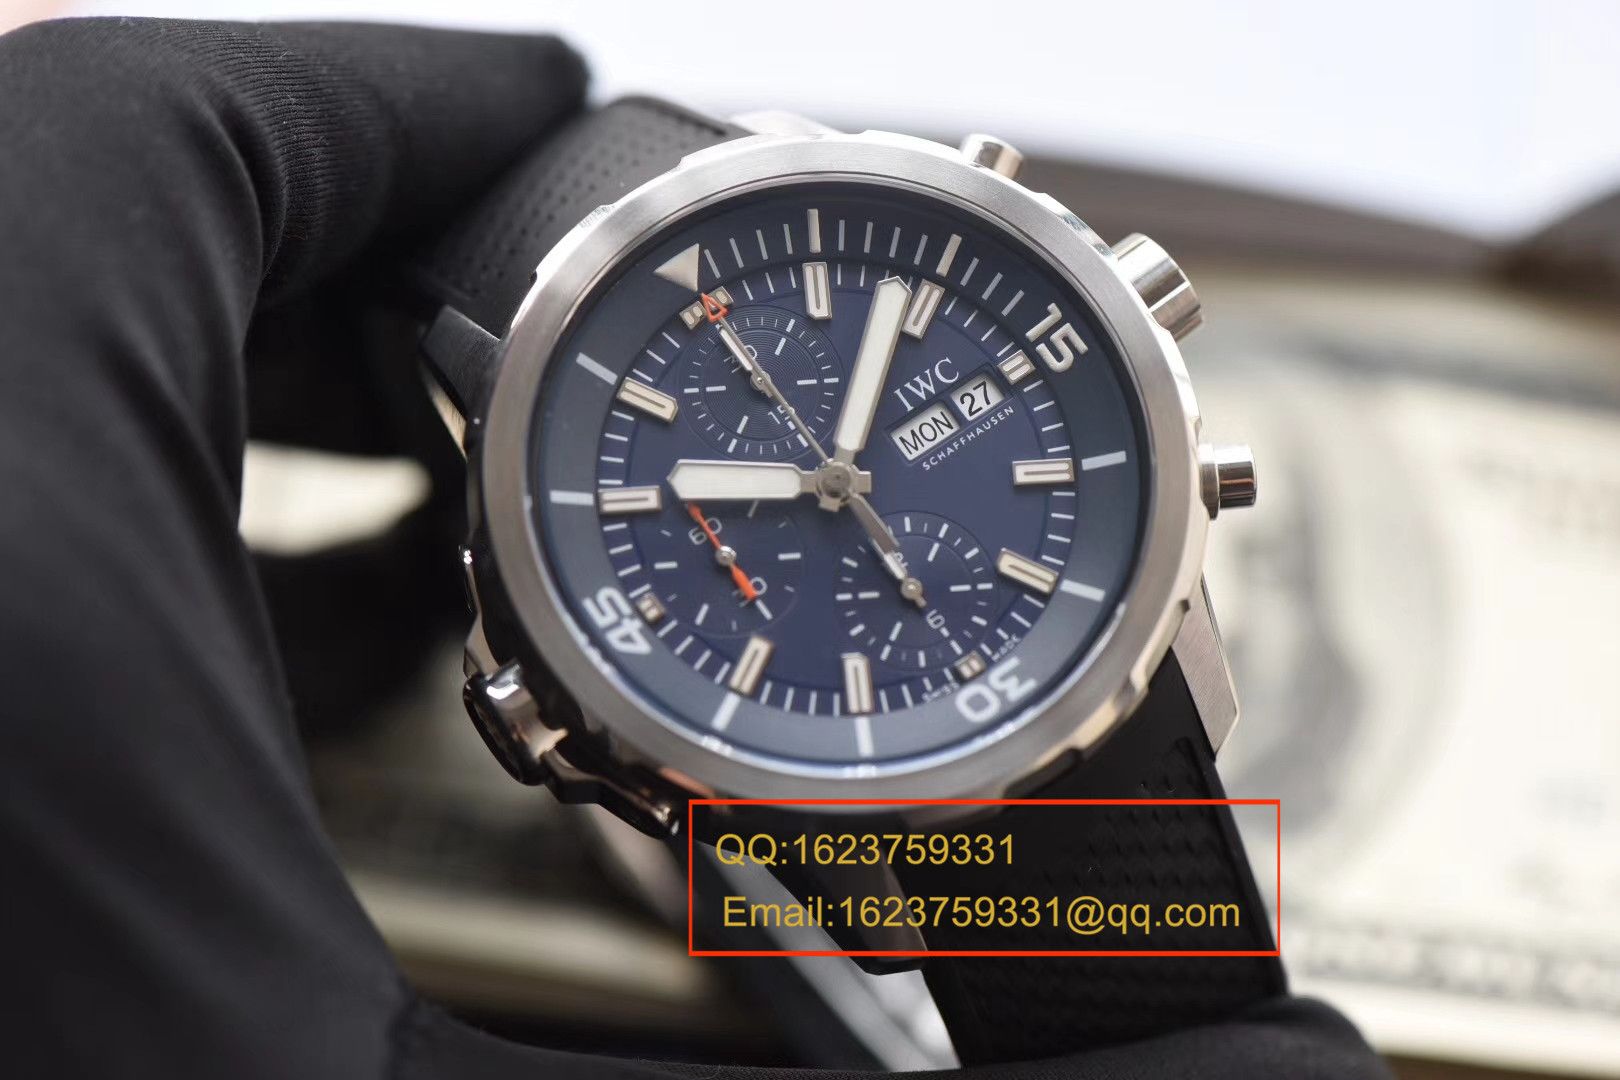 【独家视频测评V6厂一比一超A精仿手表】万国海洋时计系列雅克-伊夫．库斯托探险之旅特别版IW376805 男士机械腕表 / WG166